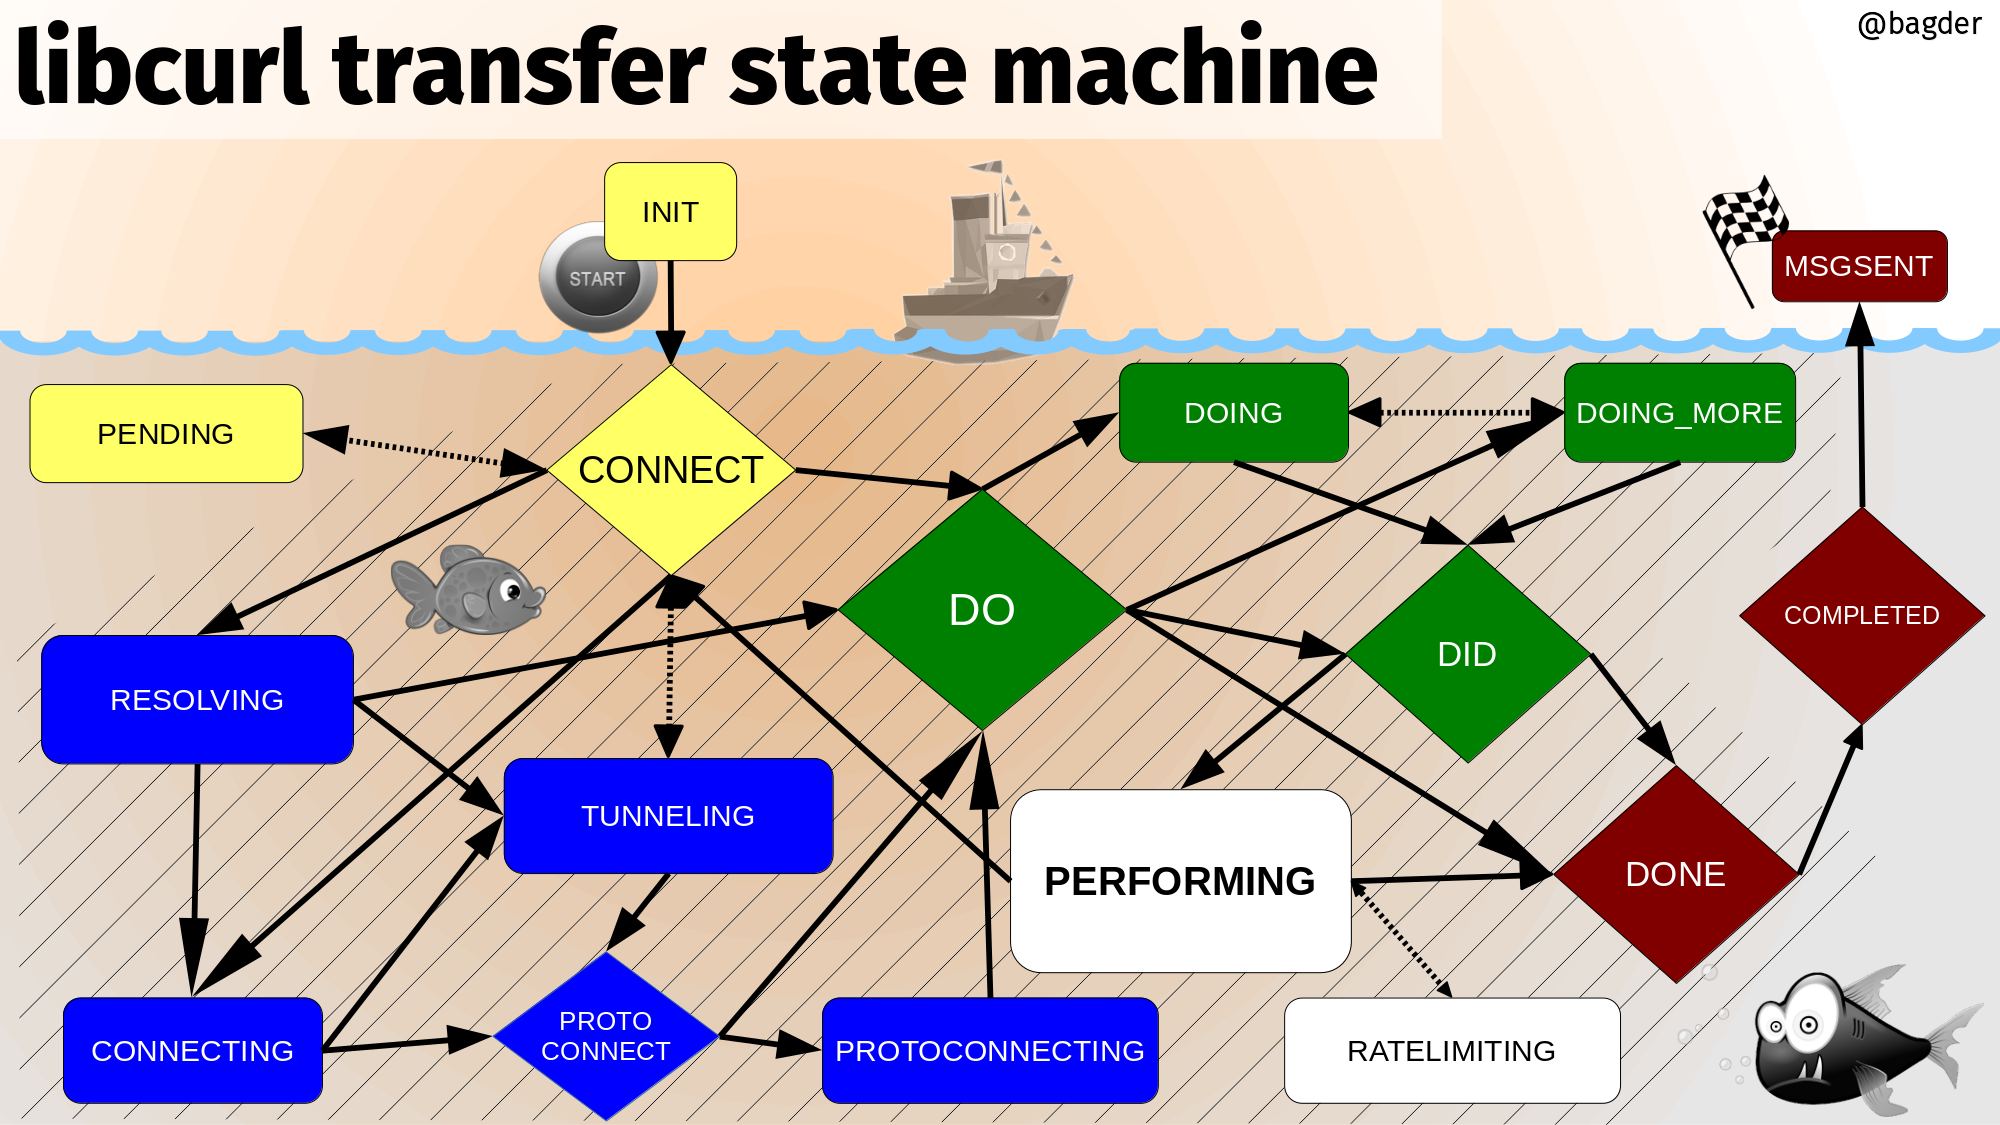 libcurl transfer state machine